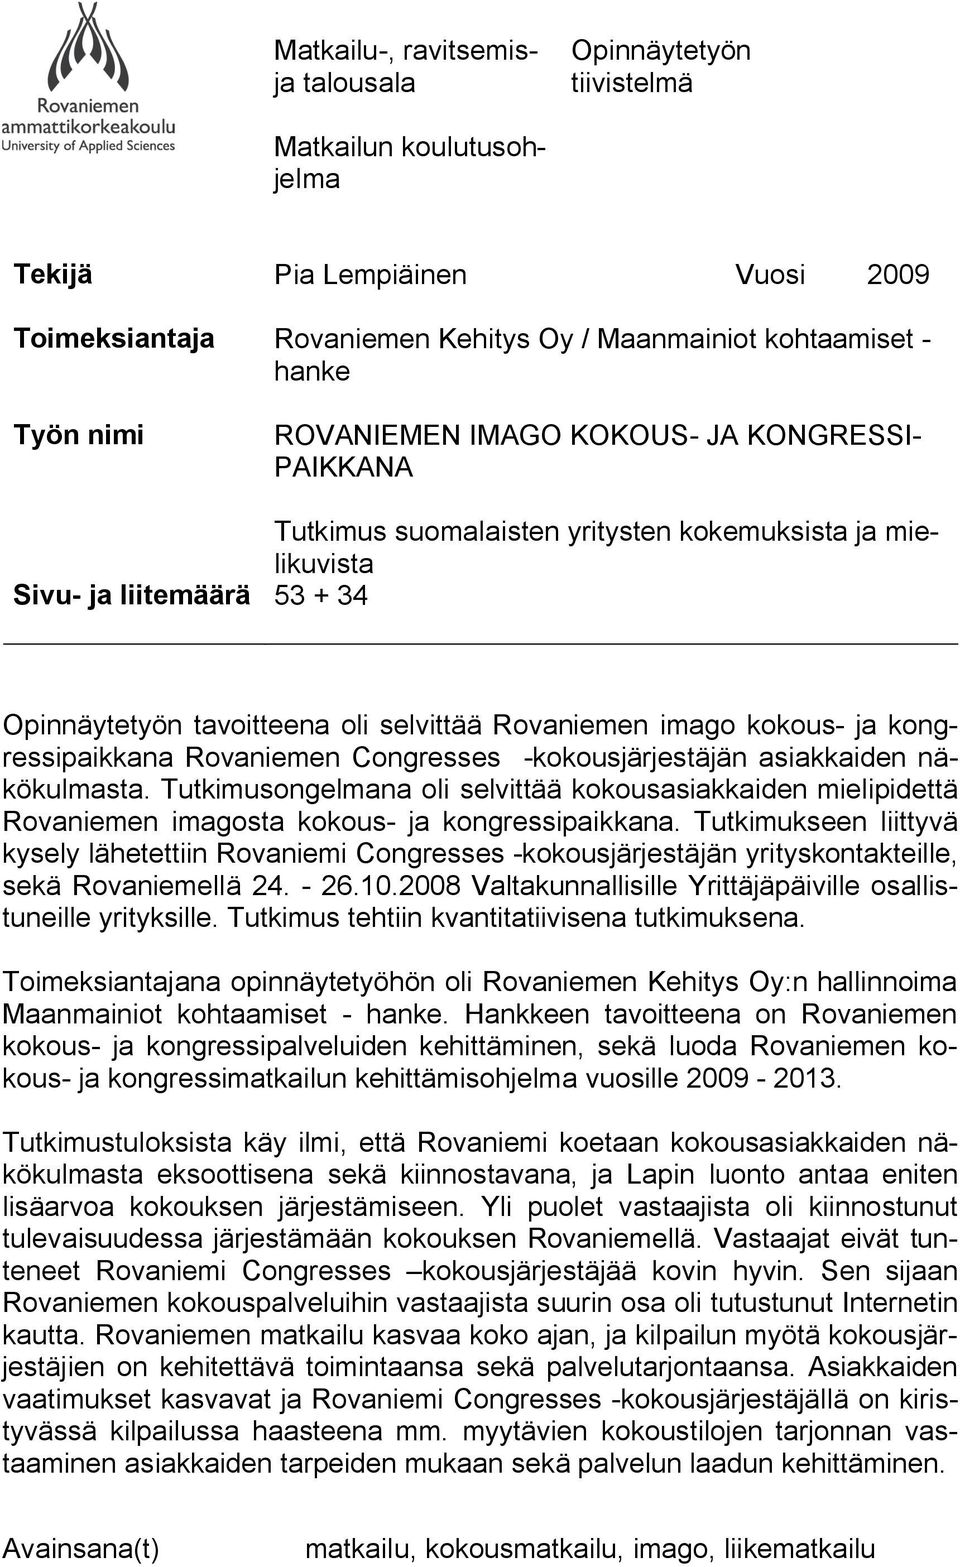 kongressipaikkana Rovaniemen Congresses kokousjärjestäjän asiakkaiden näkökulmasta. Tutkimusongelmana oli selvittää kokousasiakkaiden mielipidettä Rovaniemen imagosta kokous ja kongressipaikkana.